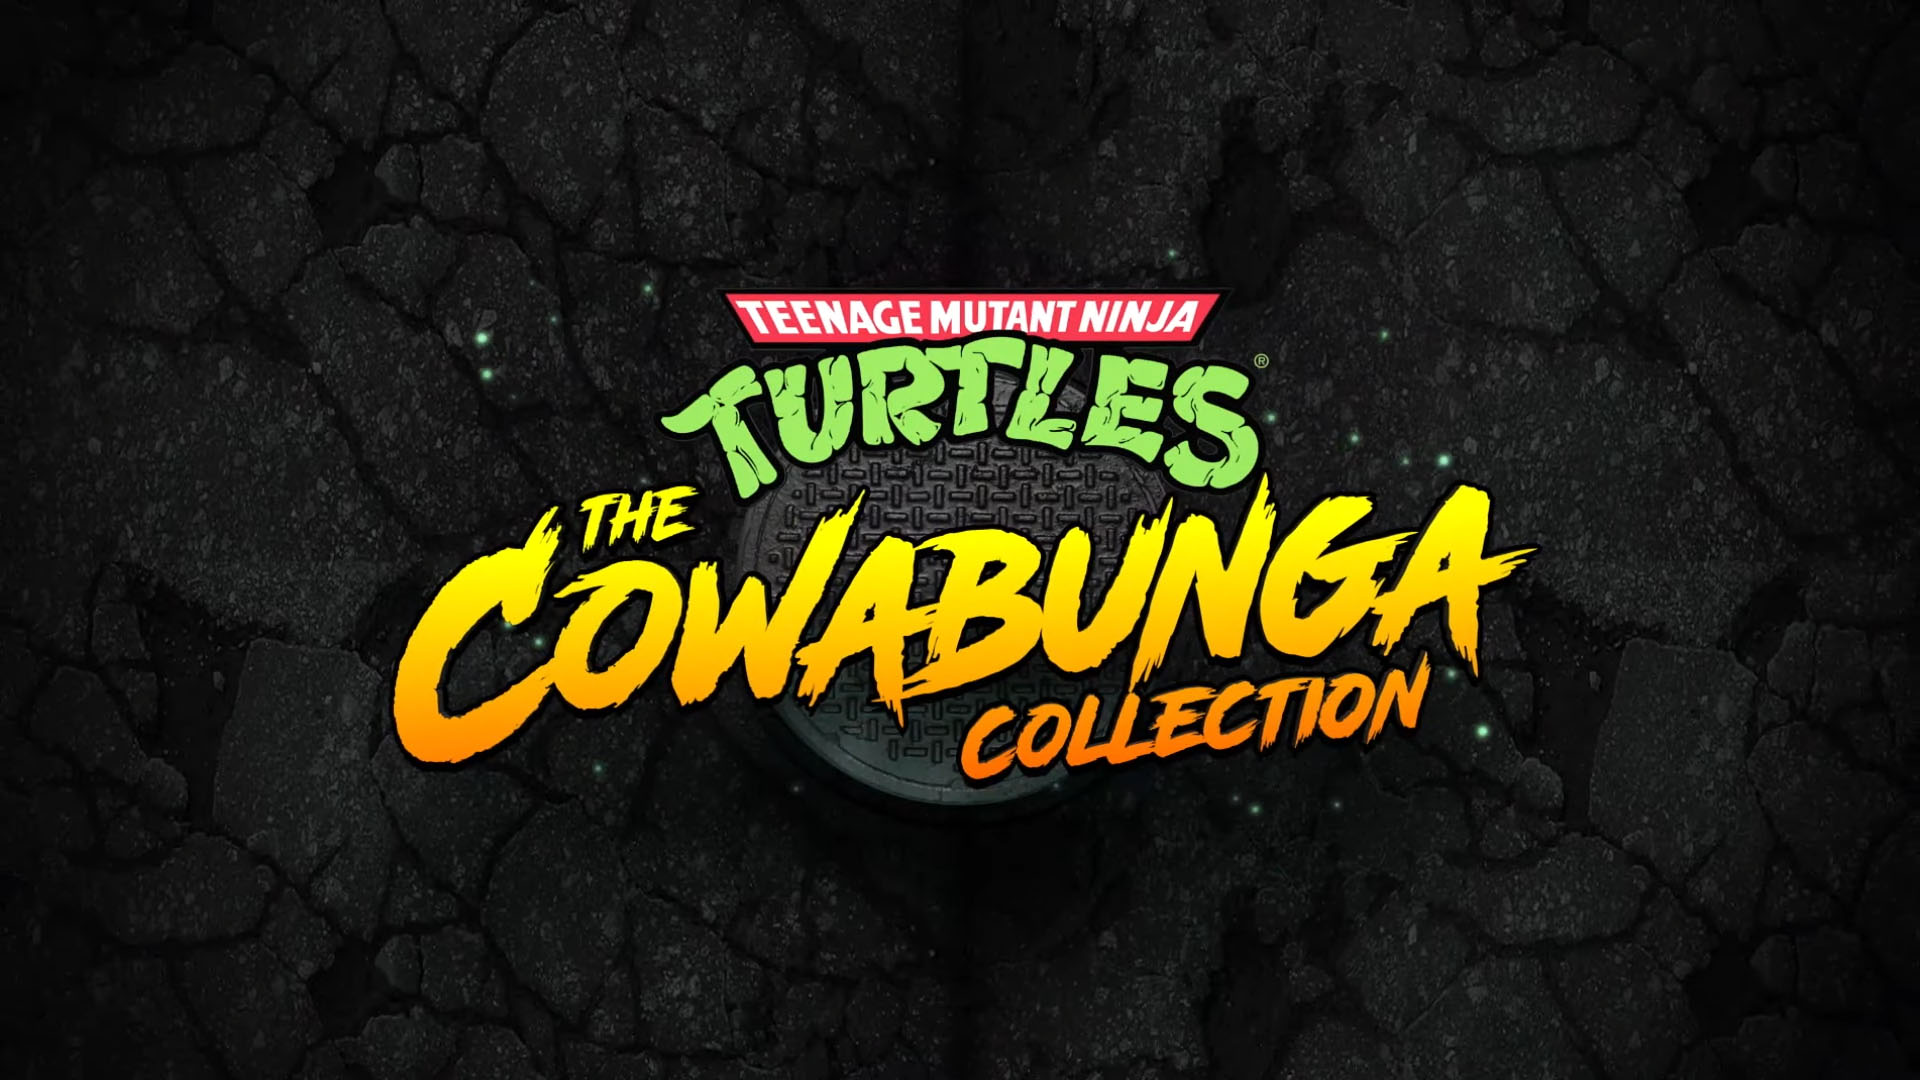 Сборник Teenage Mutant Ninja Turtles: The Cowabunga Collection получает первые оценки от критиков: с сайта NEWXBOXONE.RU